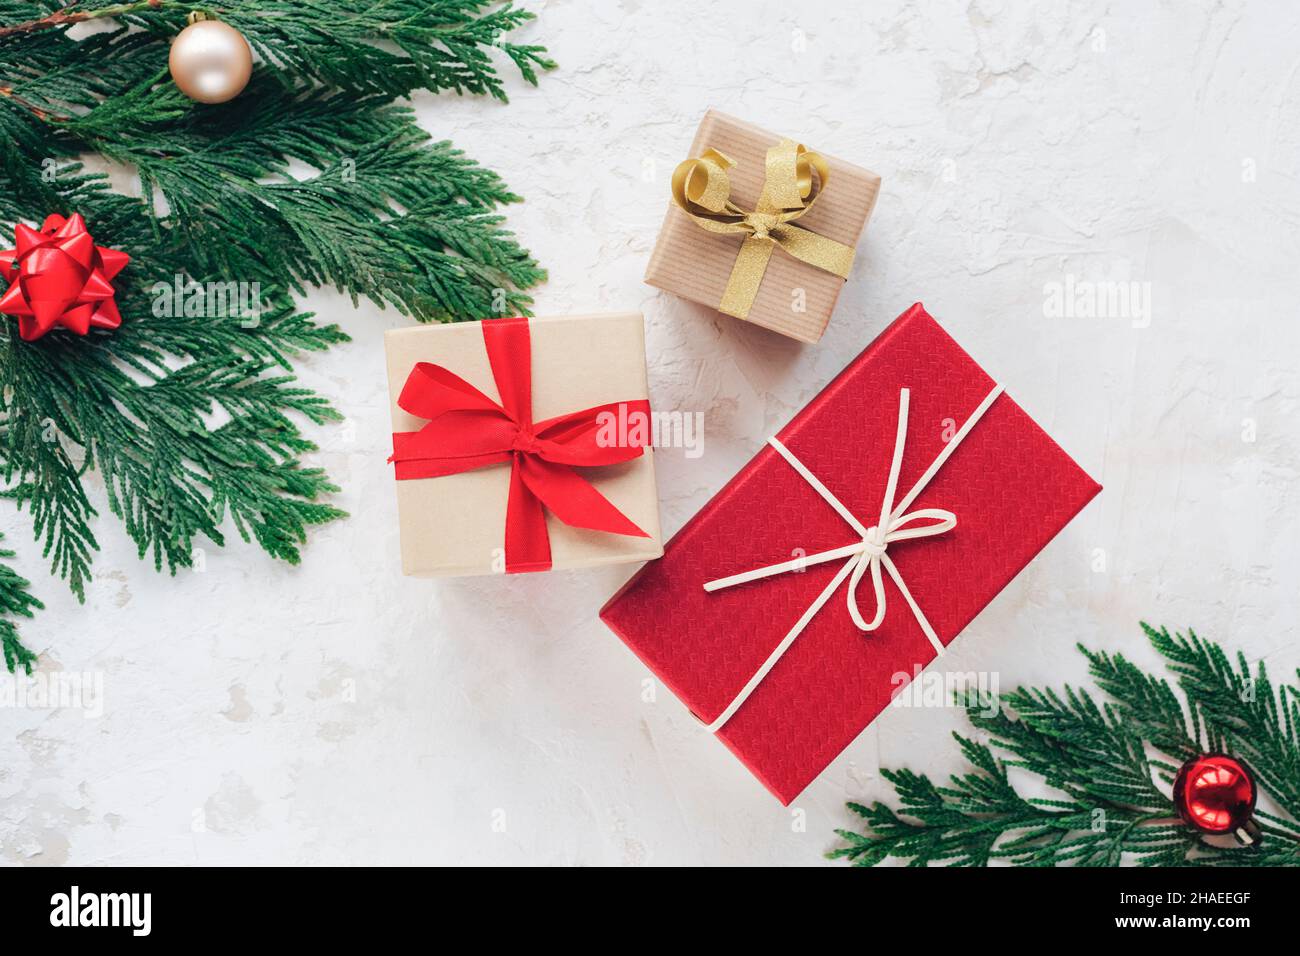 Scatole regalo di Natale, decorate con nastri. Rami di abete con palline rosse e dorate su sfondo bianco testurizzato. Vista dall'alto, piatto. Foto Stock